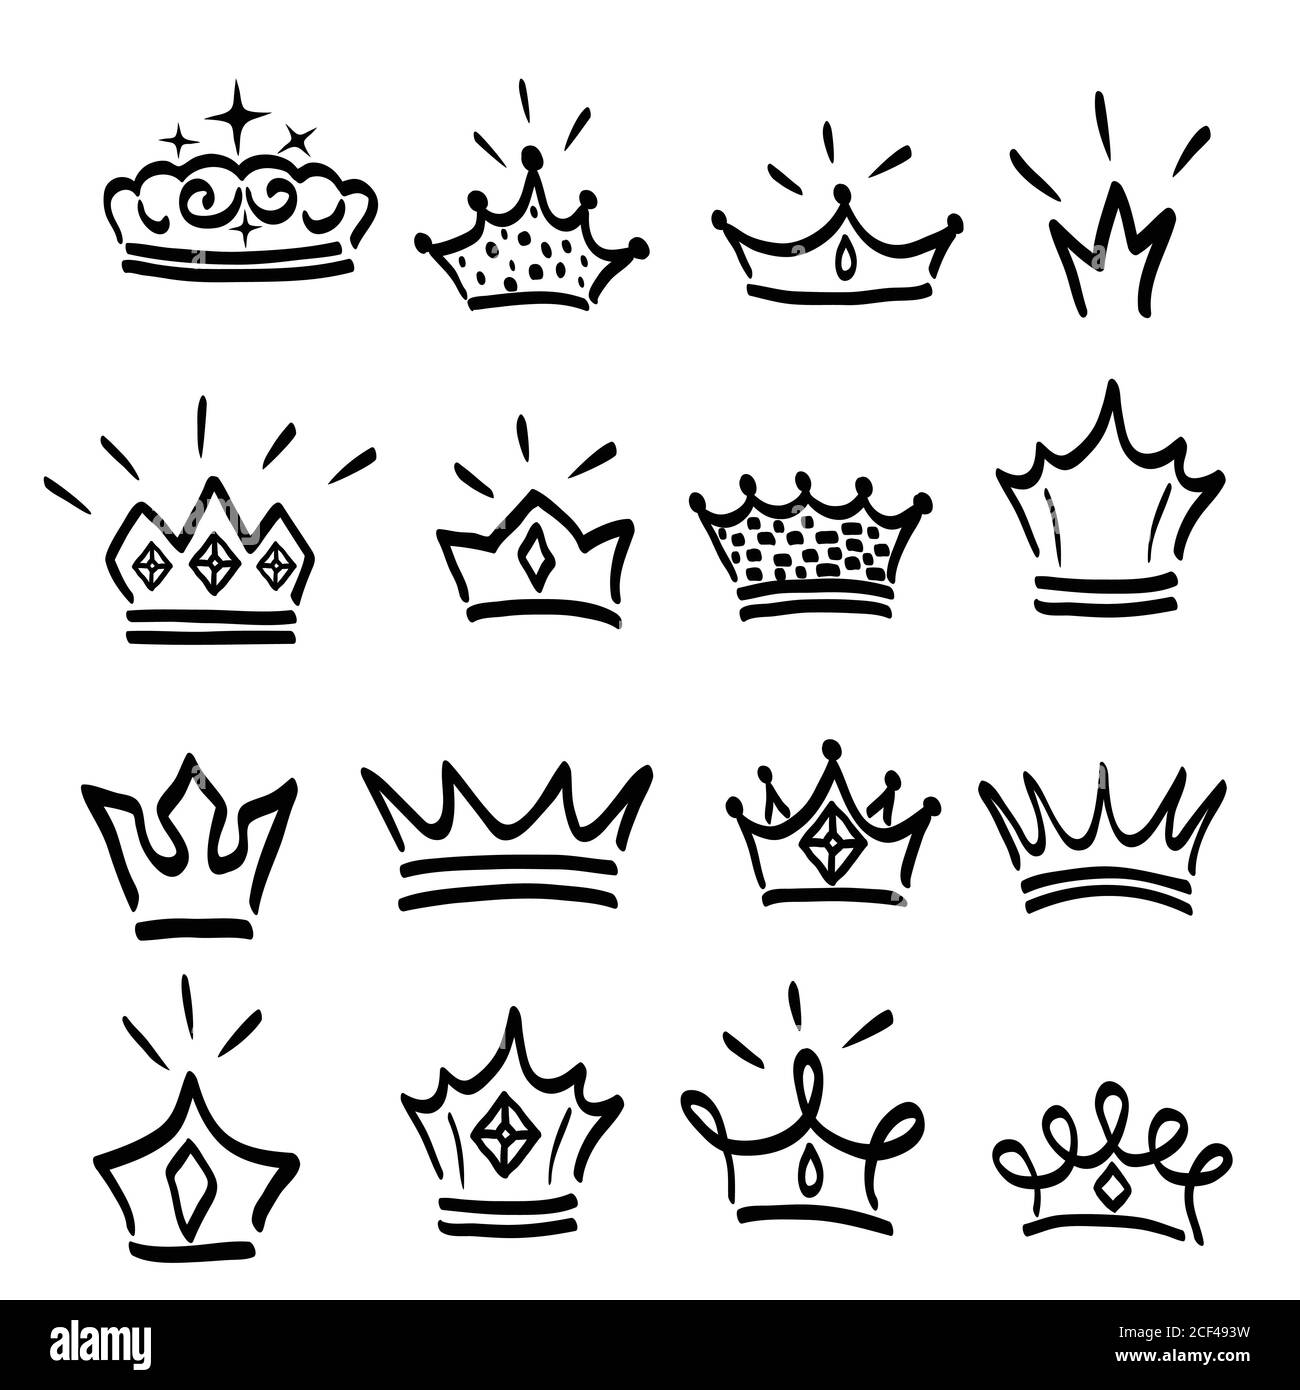 Logo Crown graffiti icône dessinée à la main. Éléments noirs isolés sur fond blanc. Ensemble de couronne et tiara dessinés à la main pour princesse.Vector illu Illustration de Vecteur